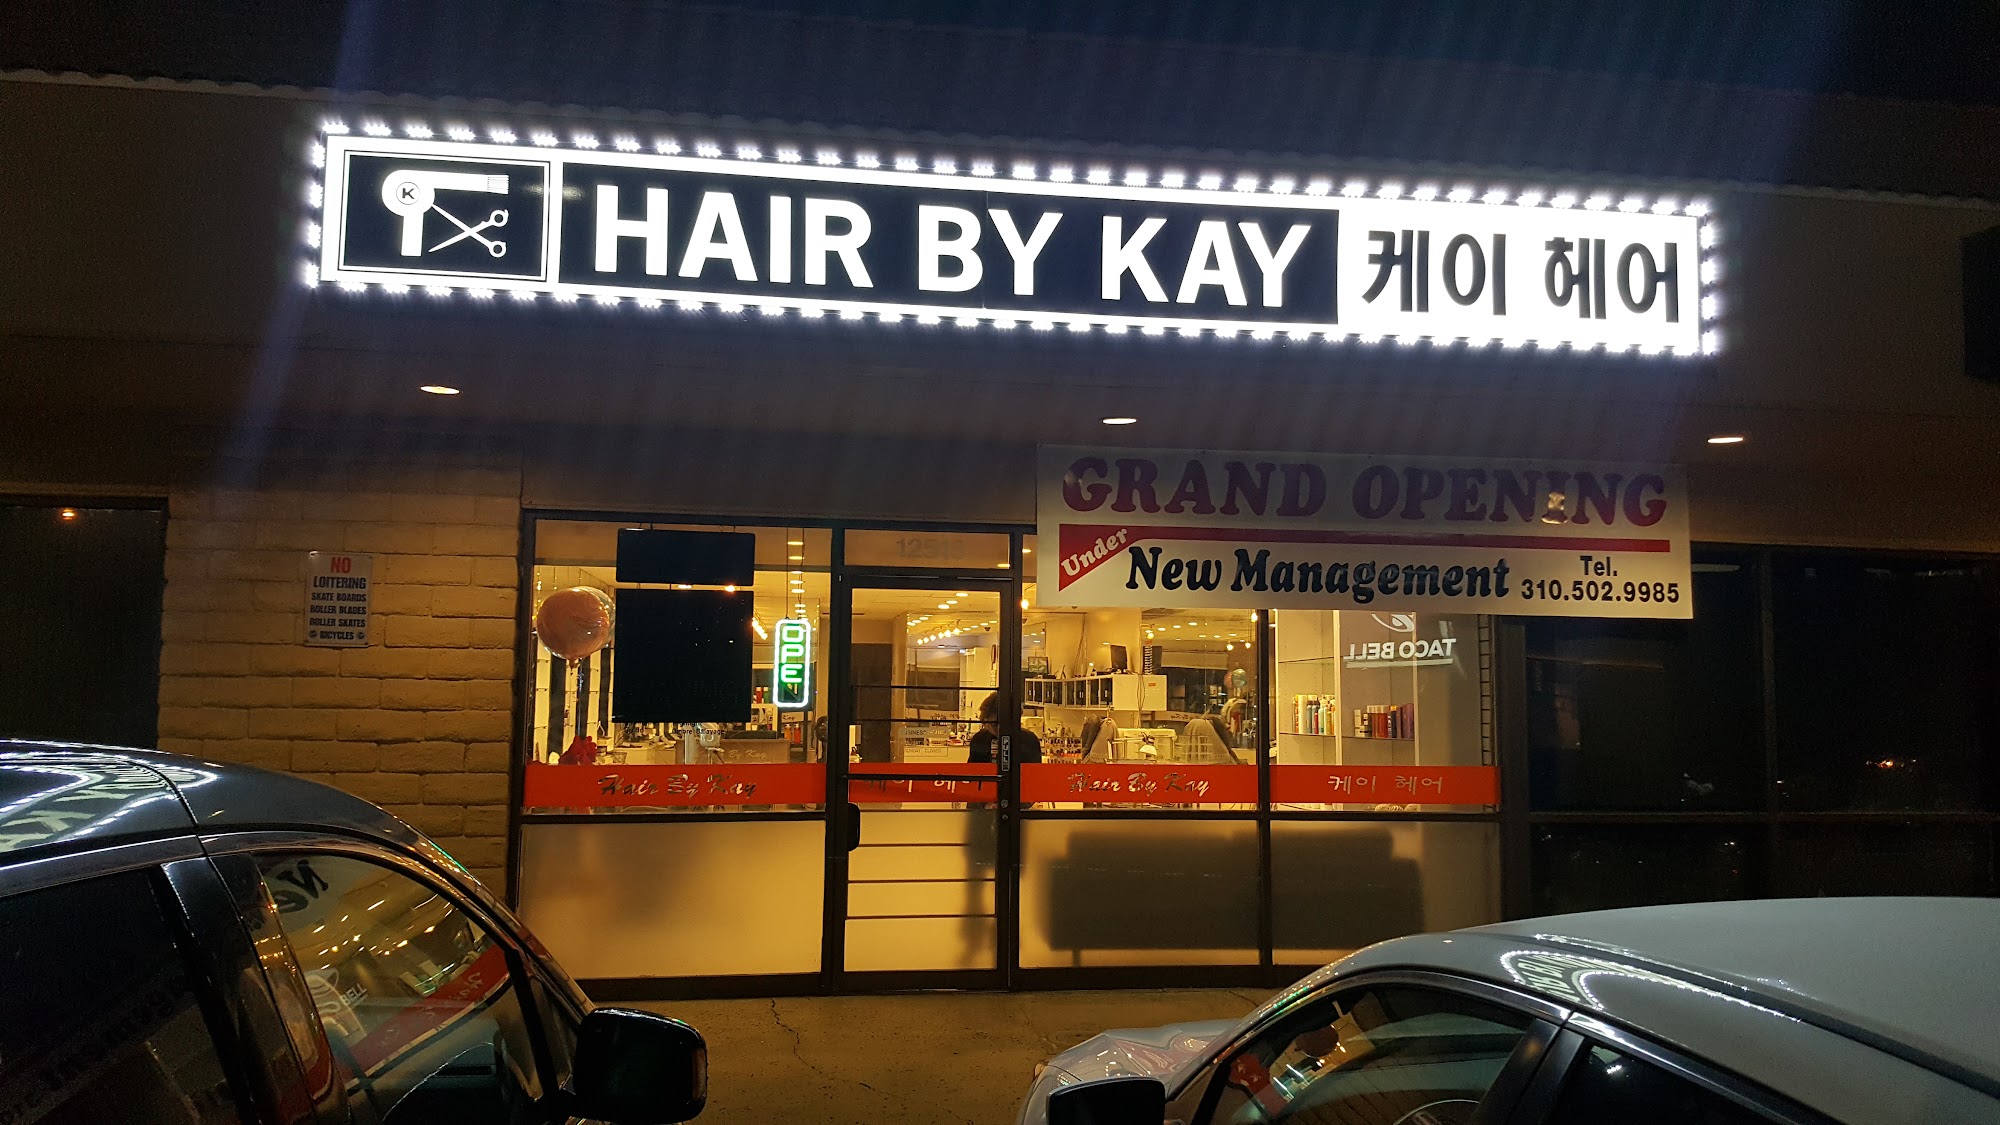 Hair by Kay